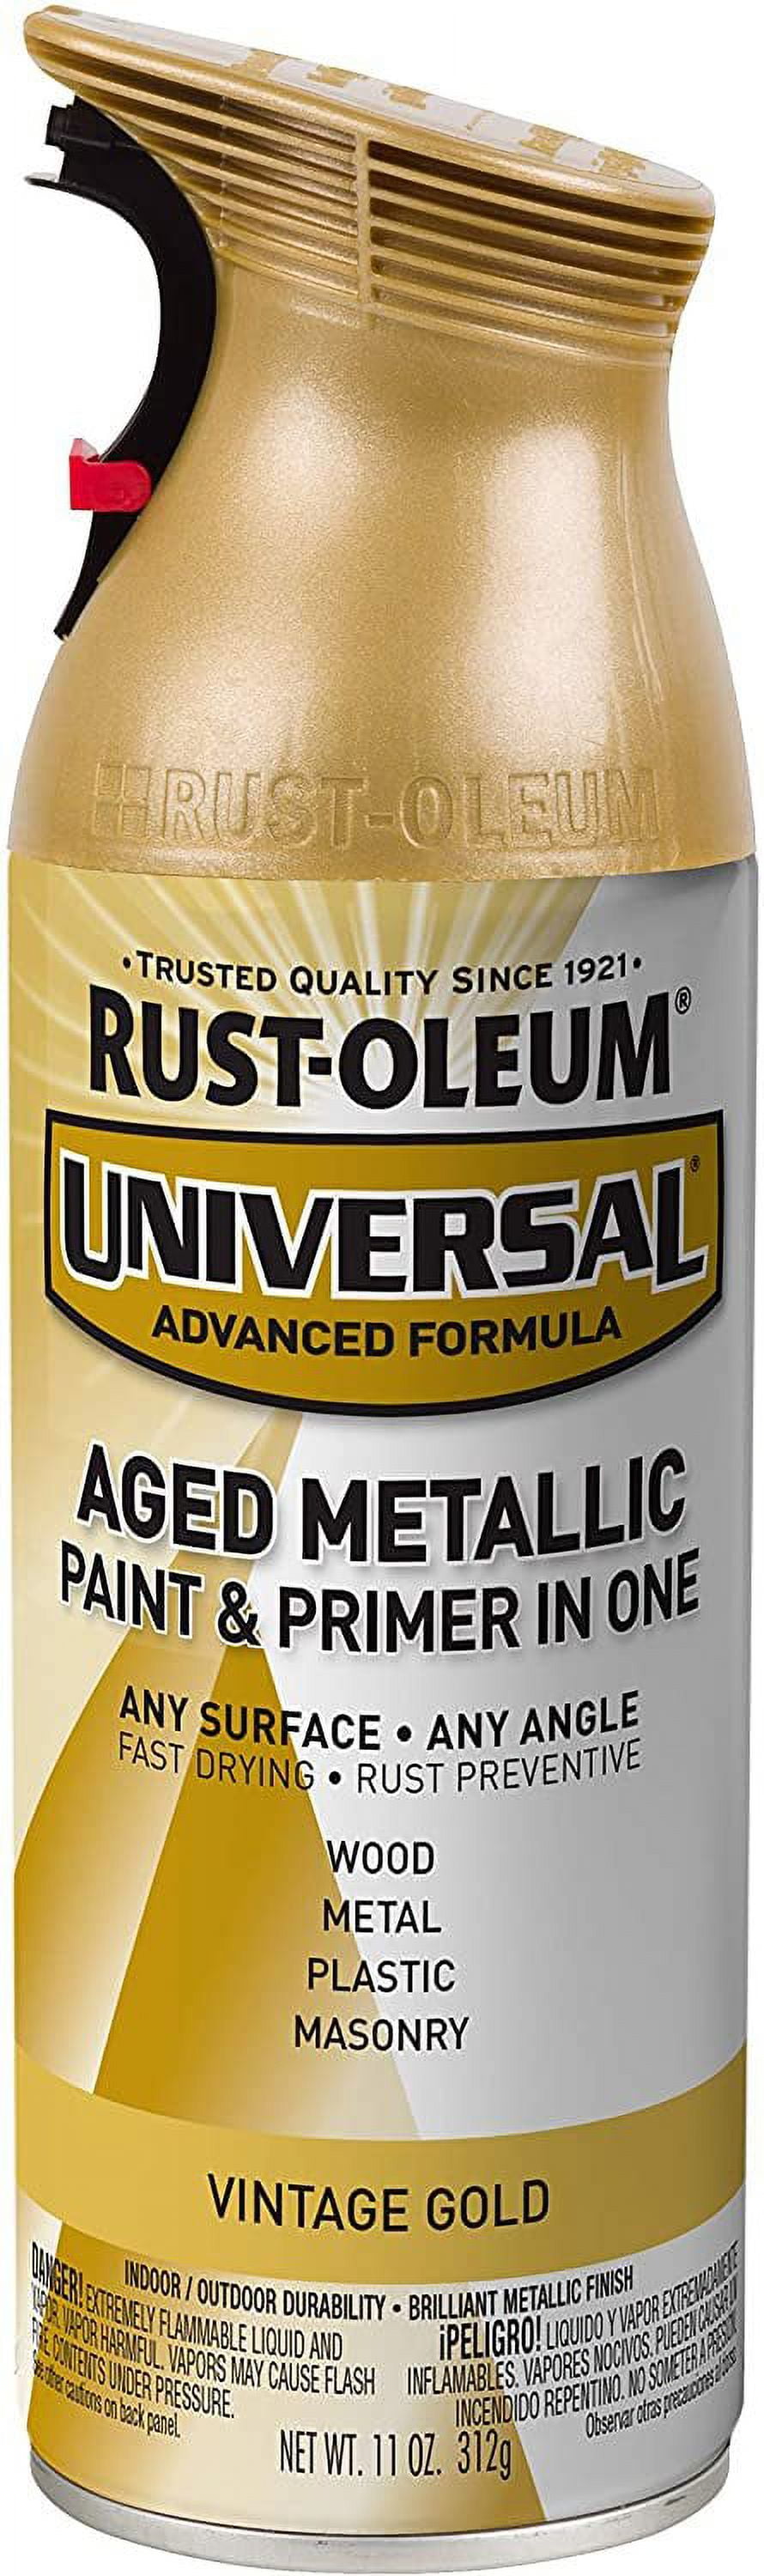 RUST-OLEUM Universal-Metallic Antique Brass Spray Paint 312 ml Price in  India - Buy RUST-OLEUM Universal-Metallic Antique Brass Spray Paint 312 ml  online at